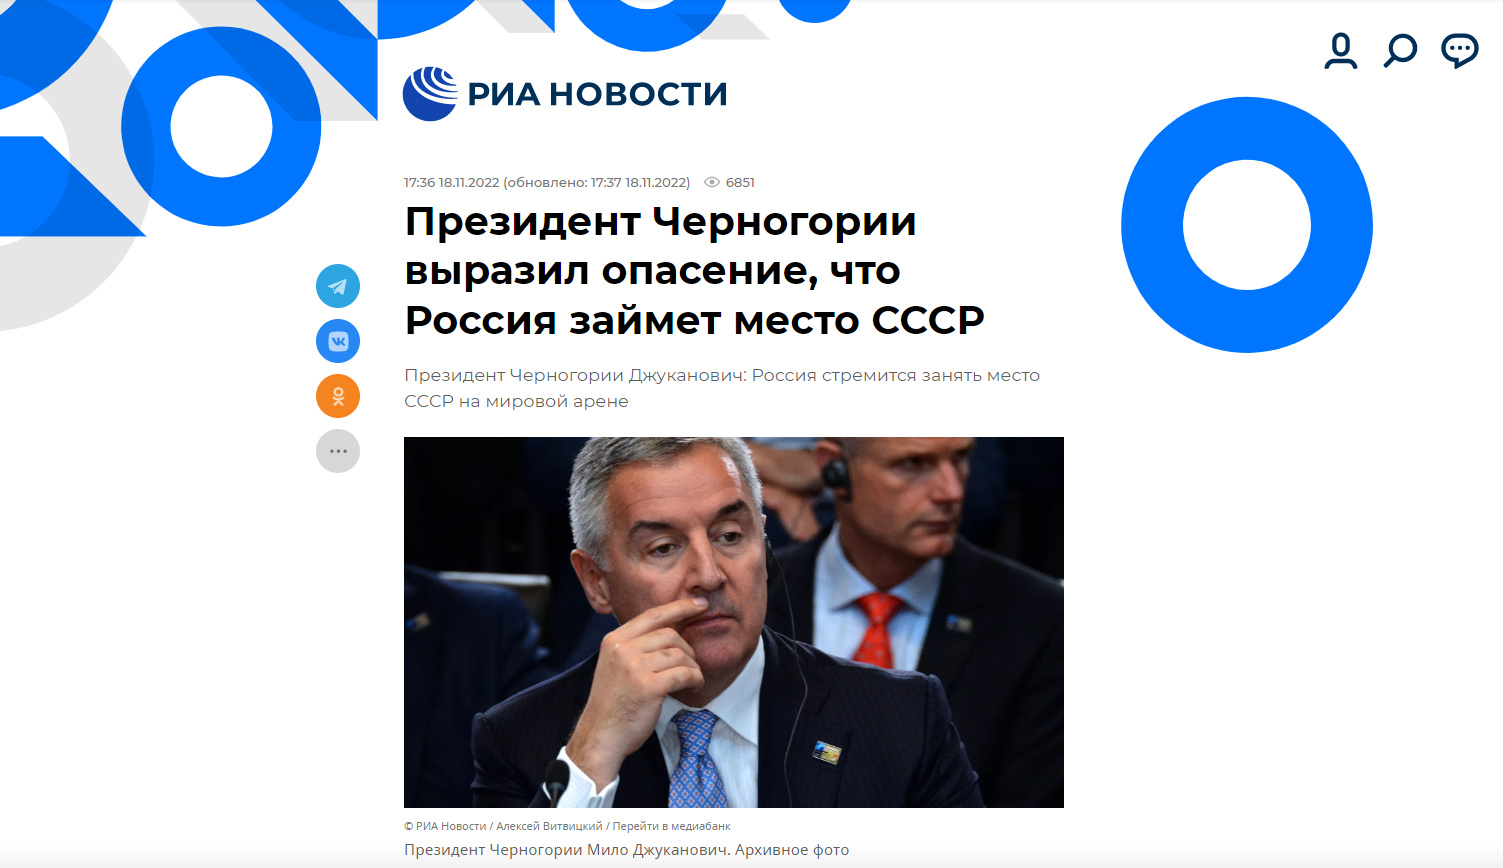 Ruski mediji napadaju Đukanovića, poručuju da Crna Gora ne može biti država